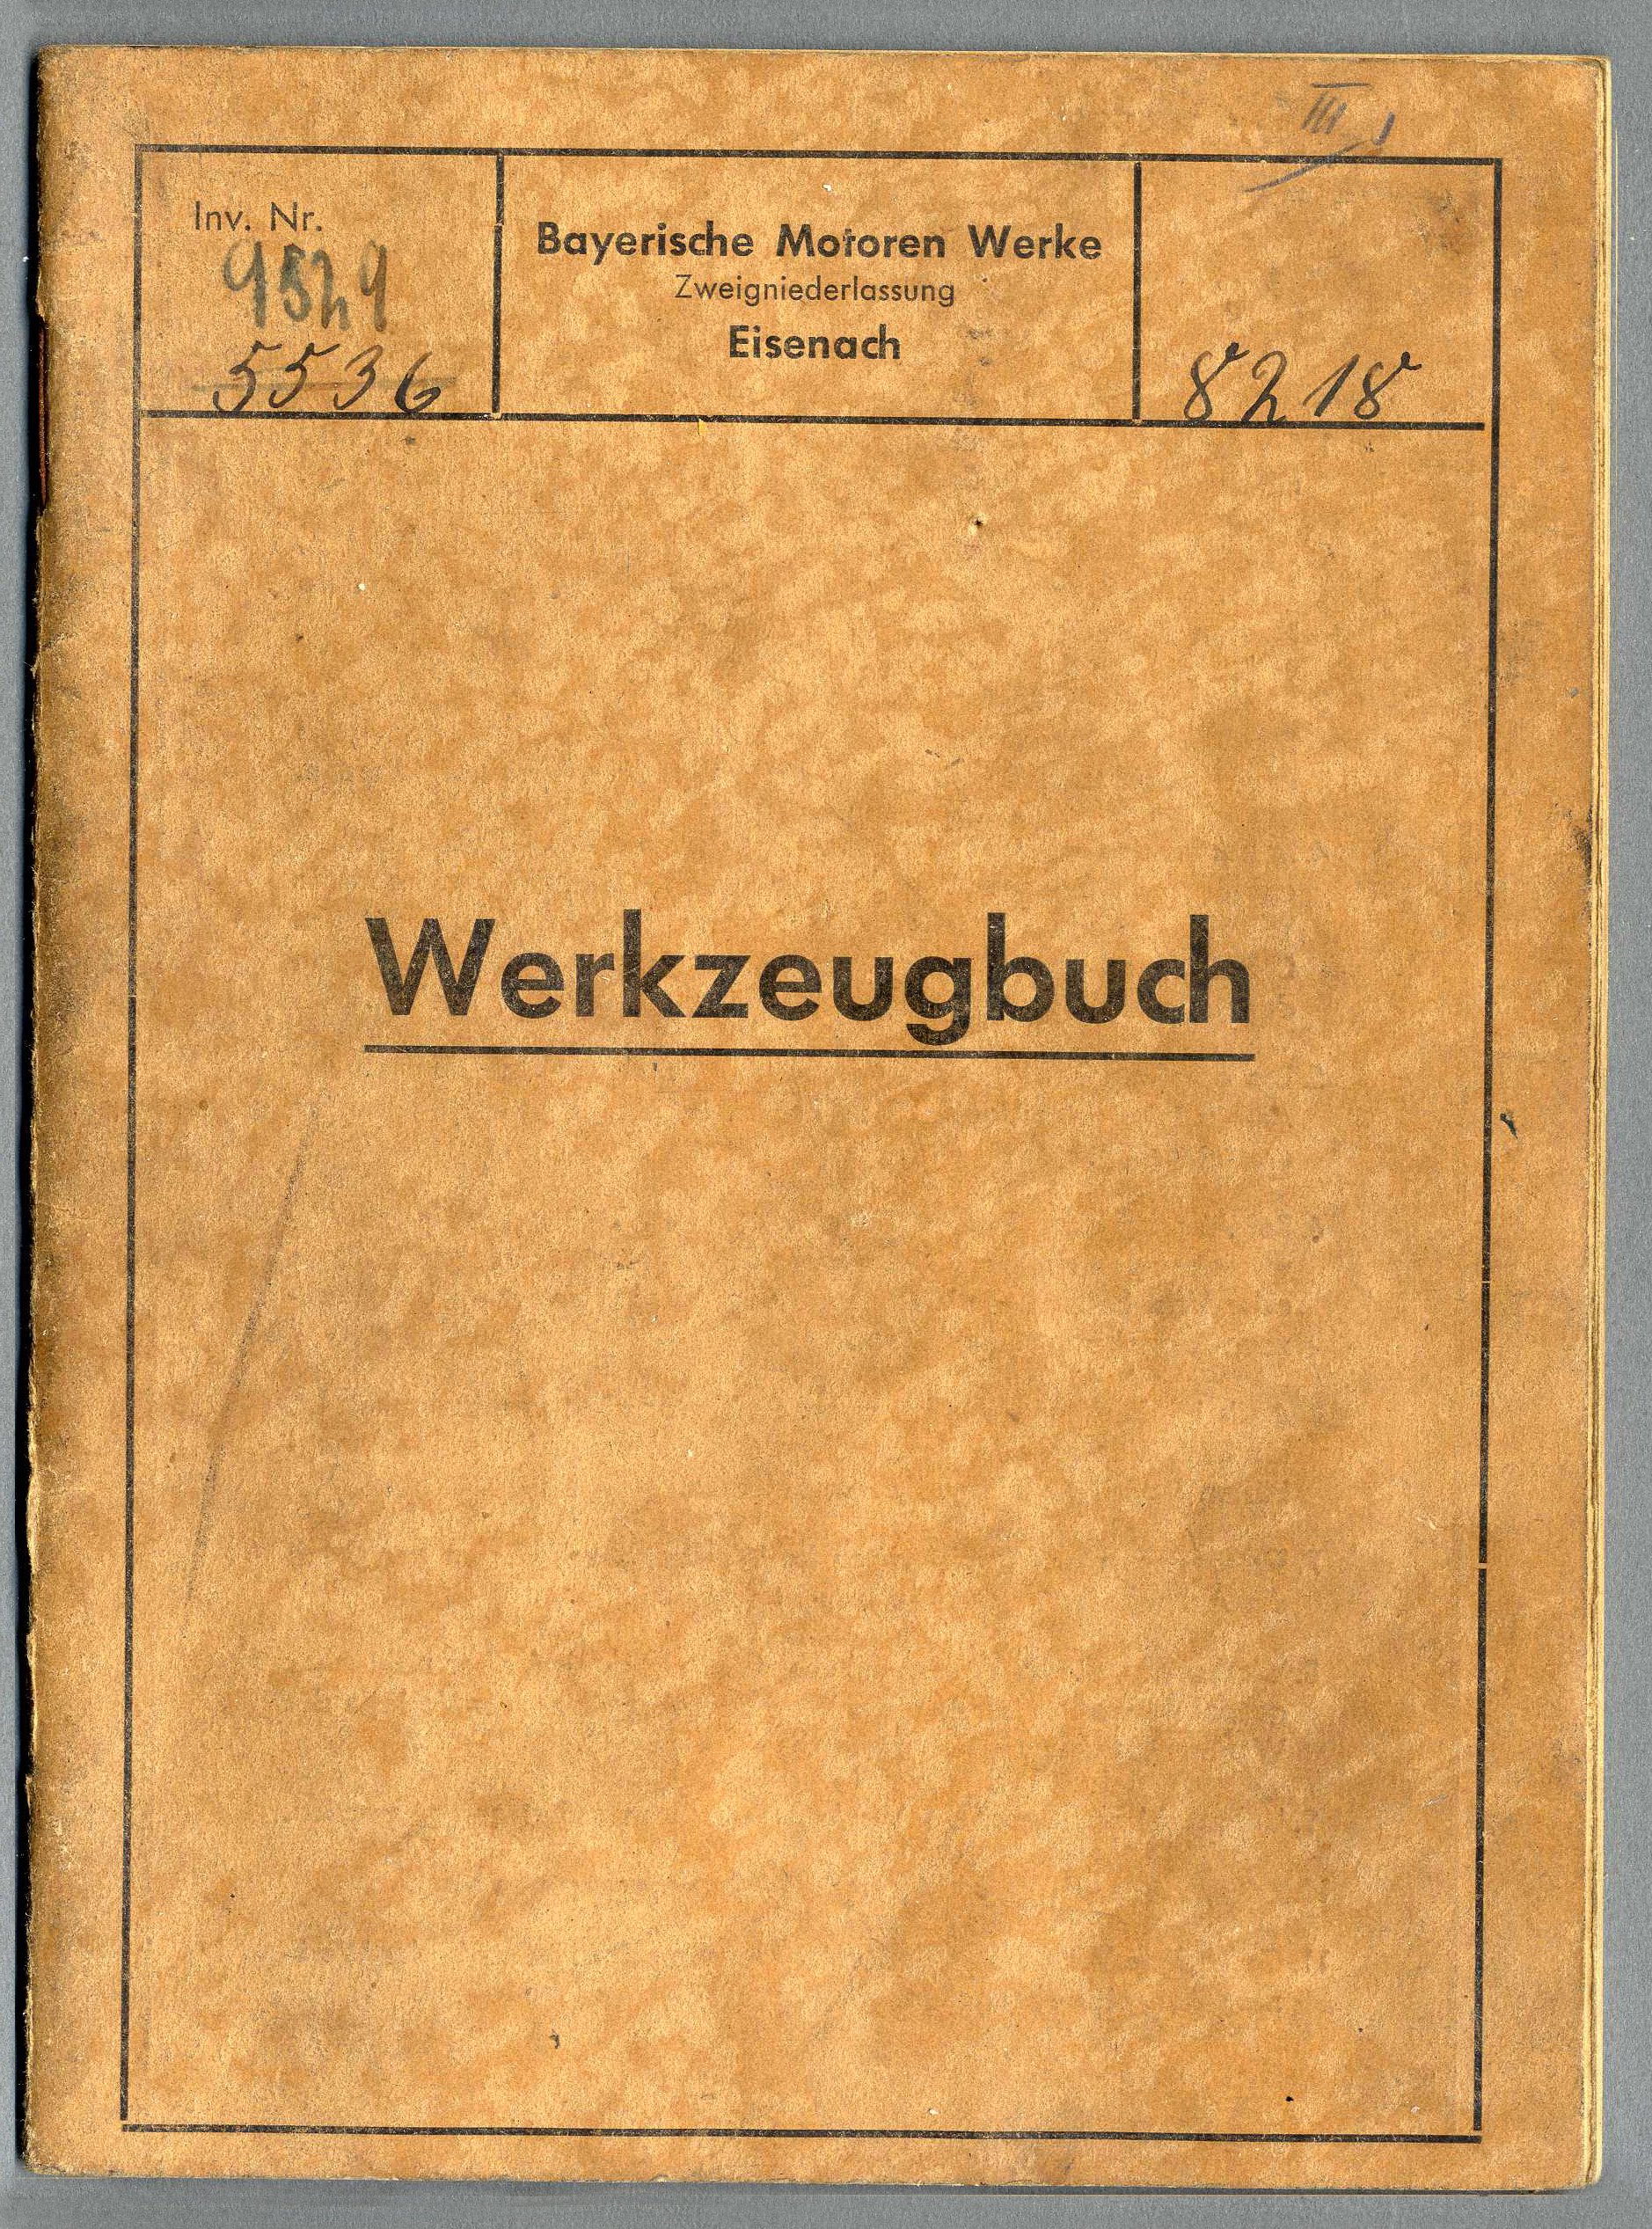 Werkzeugbuch der Bayerischen Motoren Werke, Zweigniederlassung Eisenach (BMW) (Werra-Kalibergbau-Museum, Heringen/W. CC BY-NC-SA)